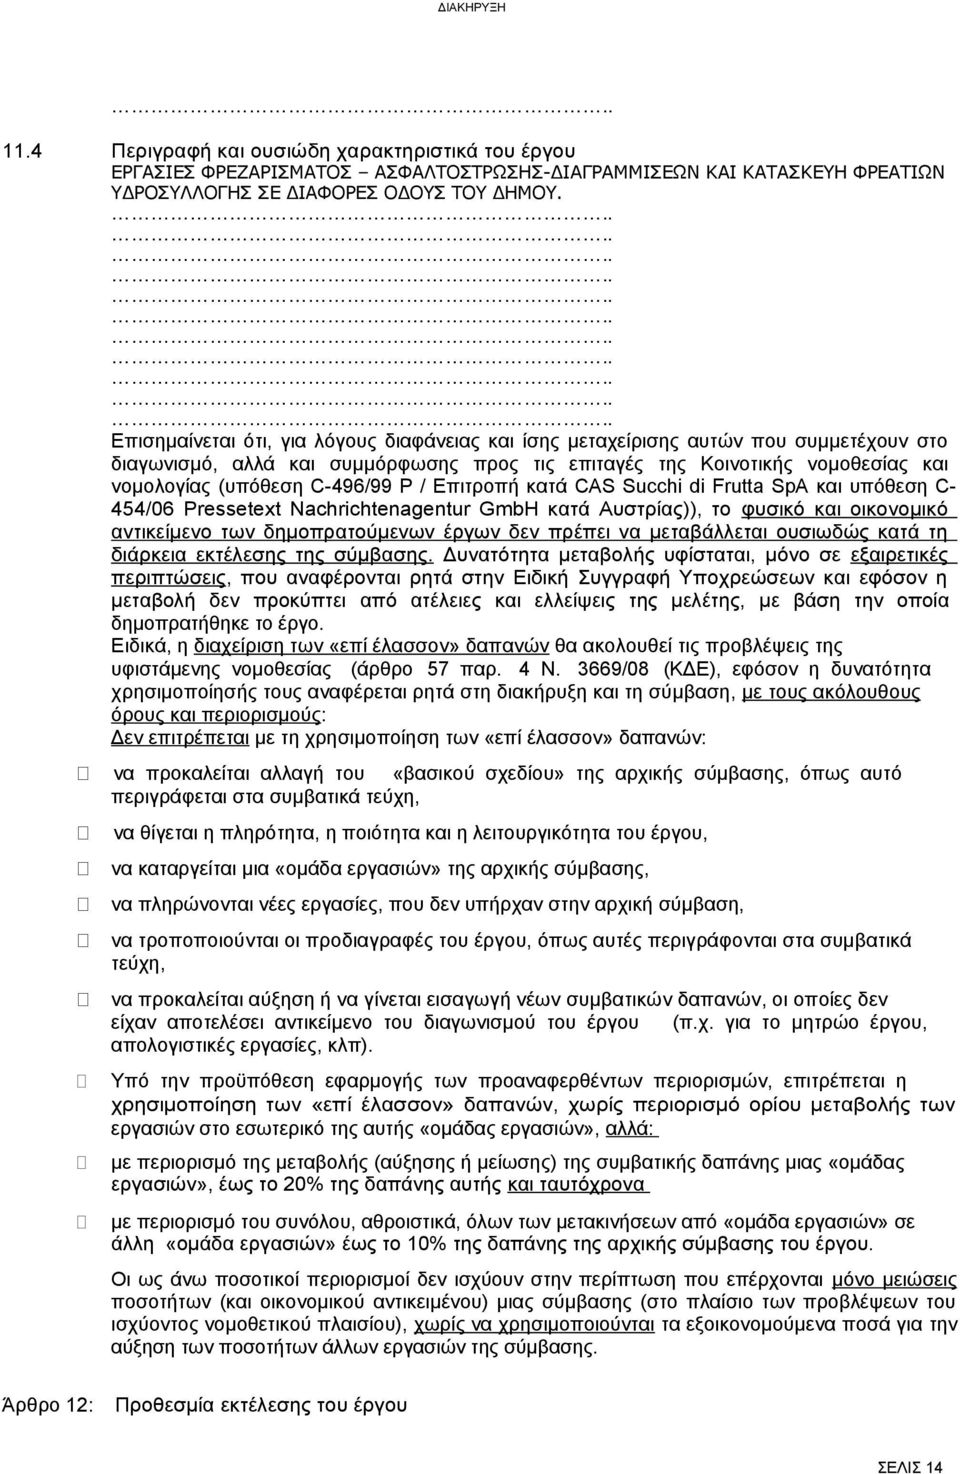 νομολογίας (υπόθεση C-496/99 P / Επιτροπή κατά CAS Succhi di Frutta SpA και υπόθεση C- 454/06 Pressetext Nachrichtenagentur GmbH κατά Αυστρίας)), το φυσικό και οικονομικό αντικείμενο των